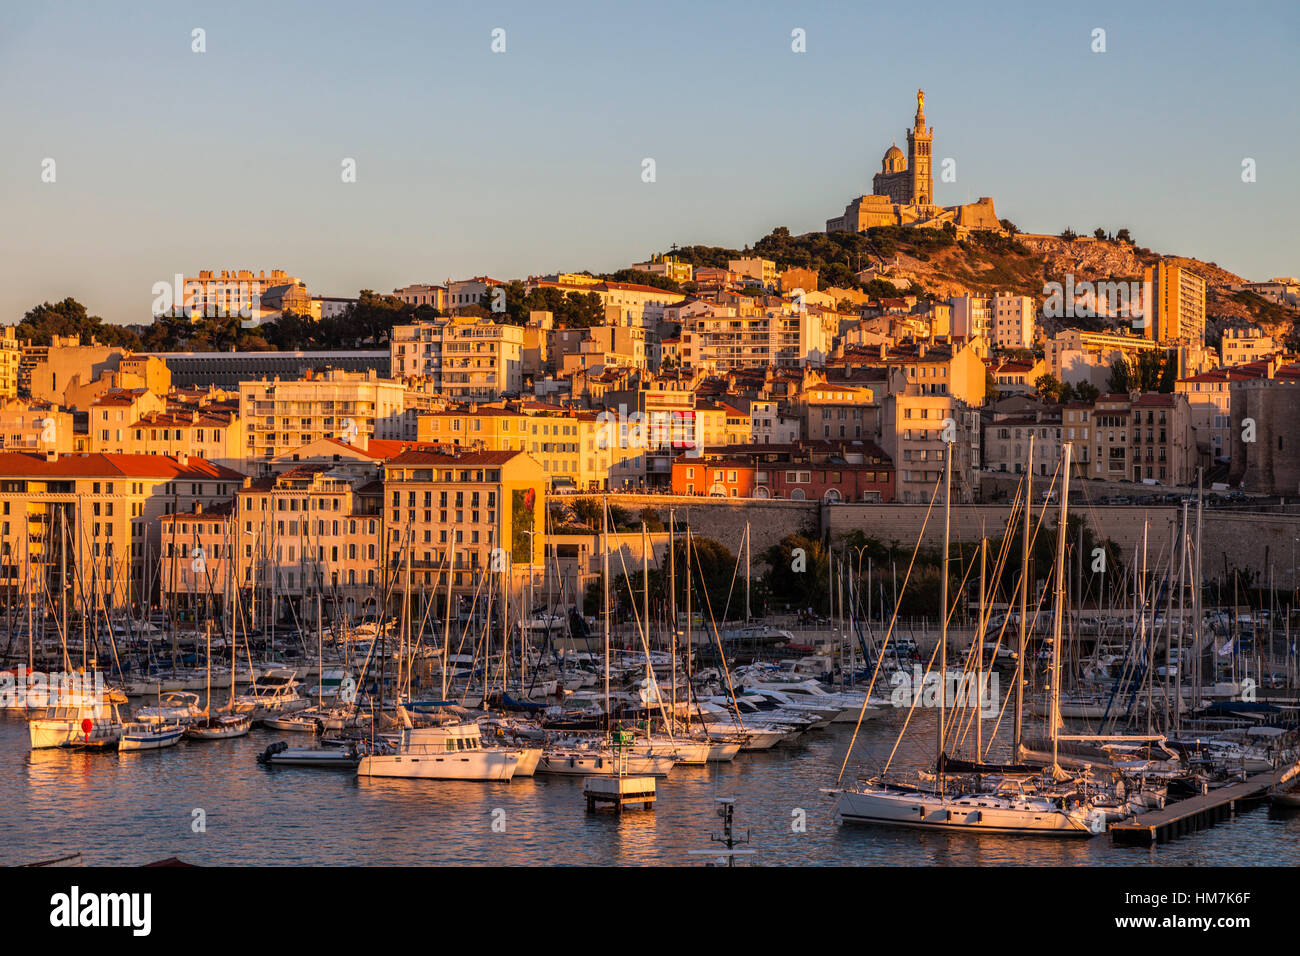 France, Provence-Alpes-Cote d'Azur, Marseille, Notre-Dame de la Garde above Vieux port - Old Port Stock Photo